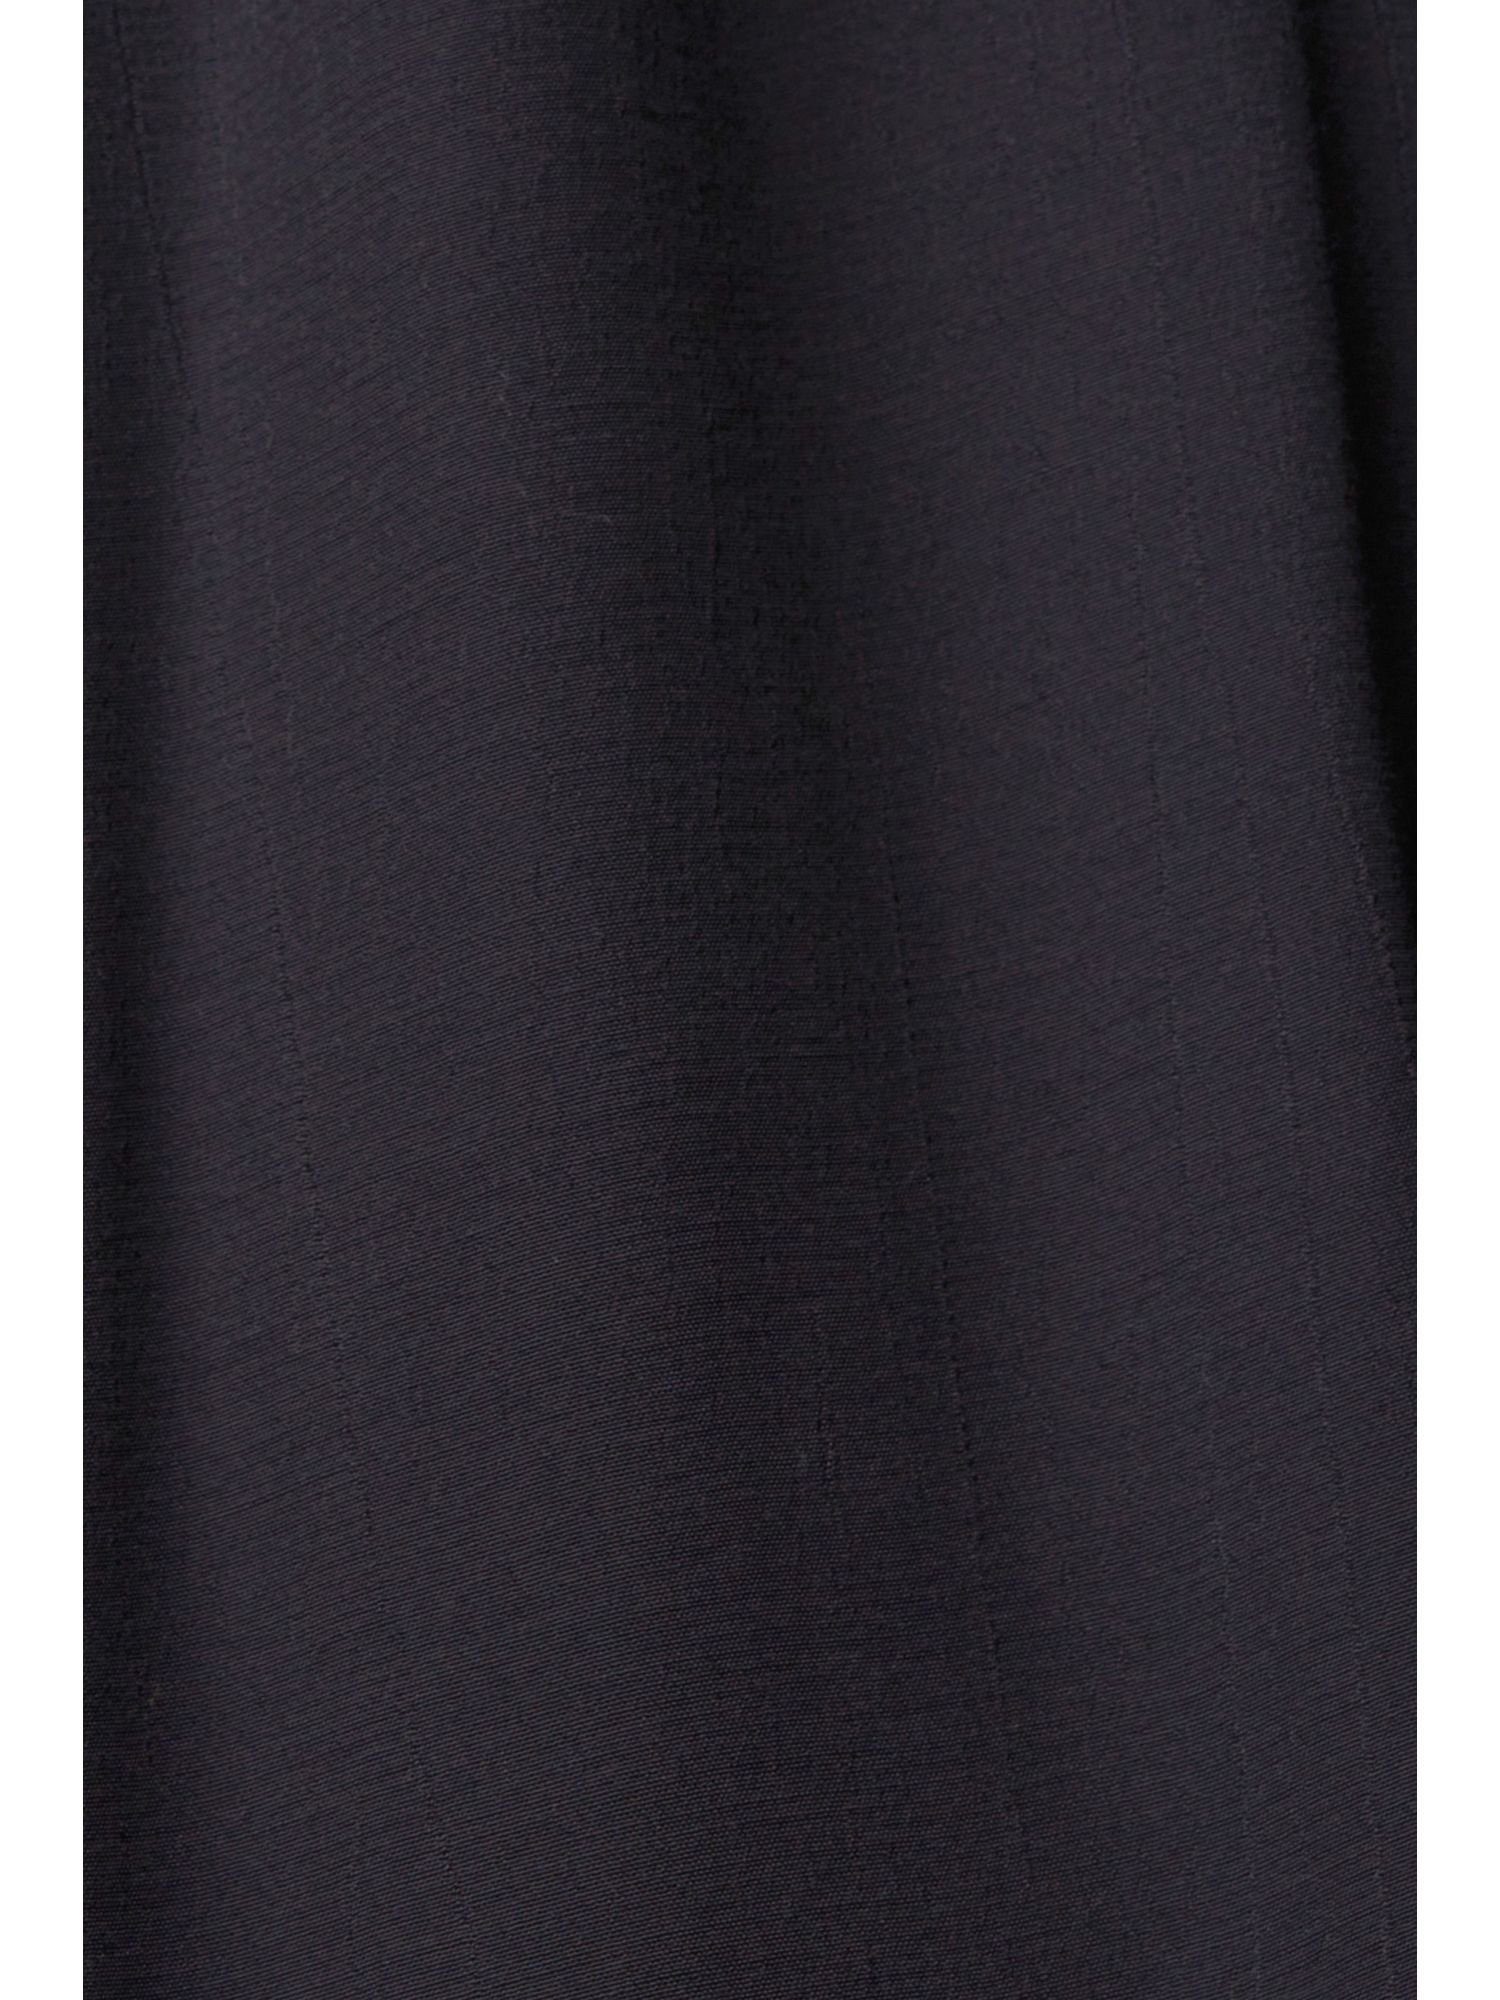 edc by Esprit Minikleid BLACK Kleid mit Spitzendetails